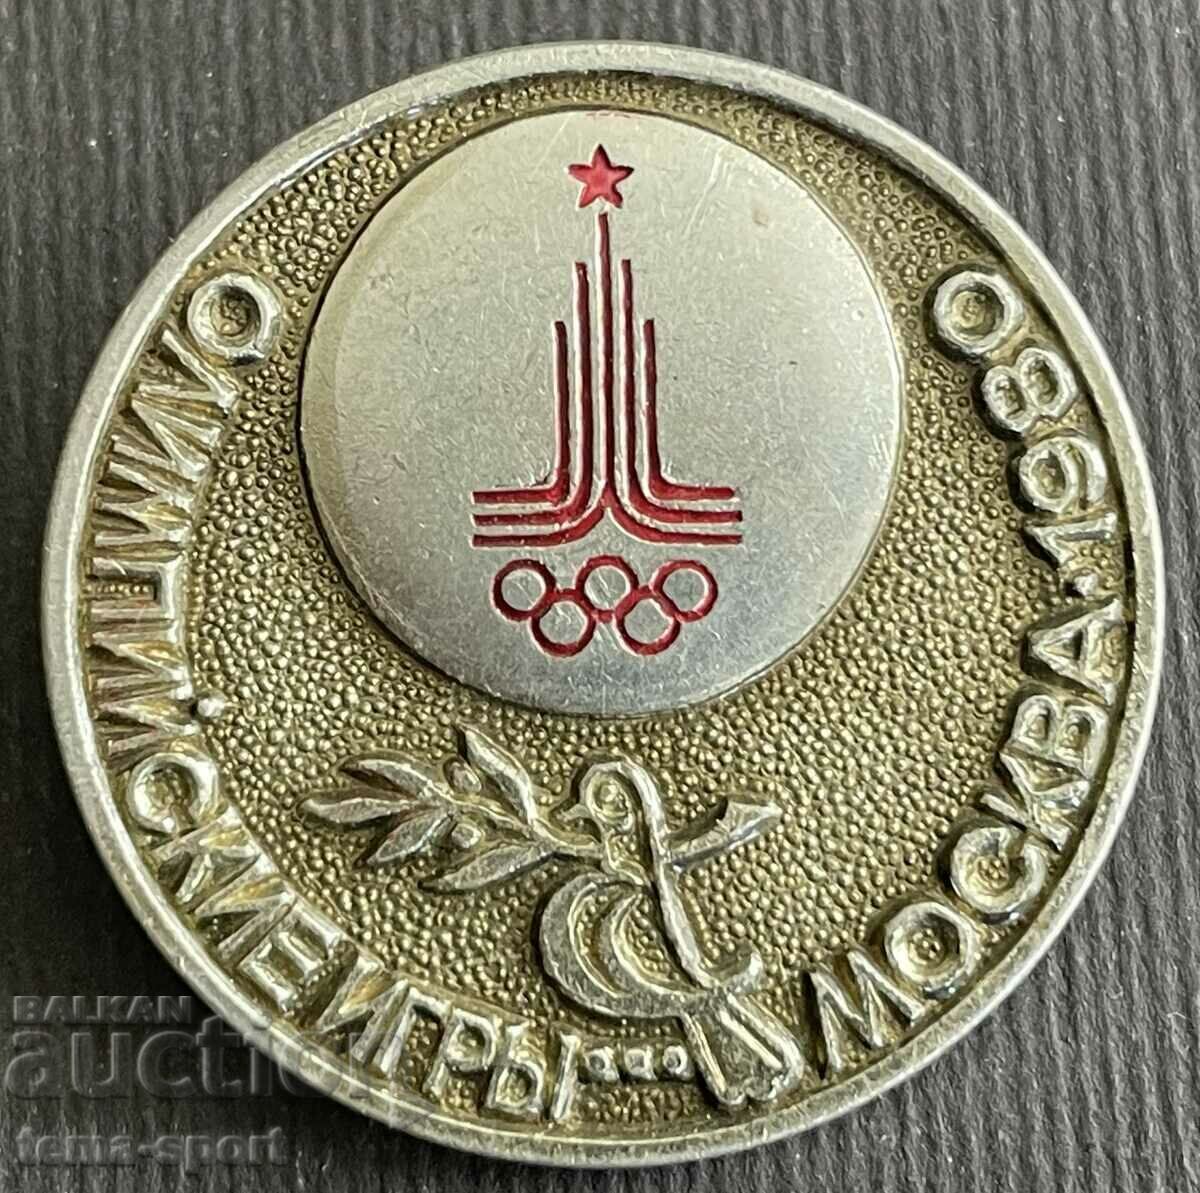 565 Ολυμπιακό σήμα της ΕΣΣΔ Ολυμπιακοί Αγώνες Μόσχα 1980.